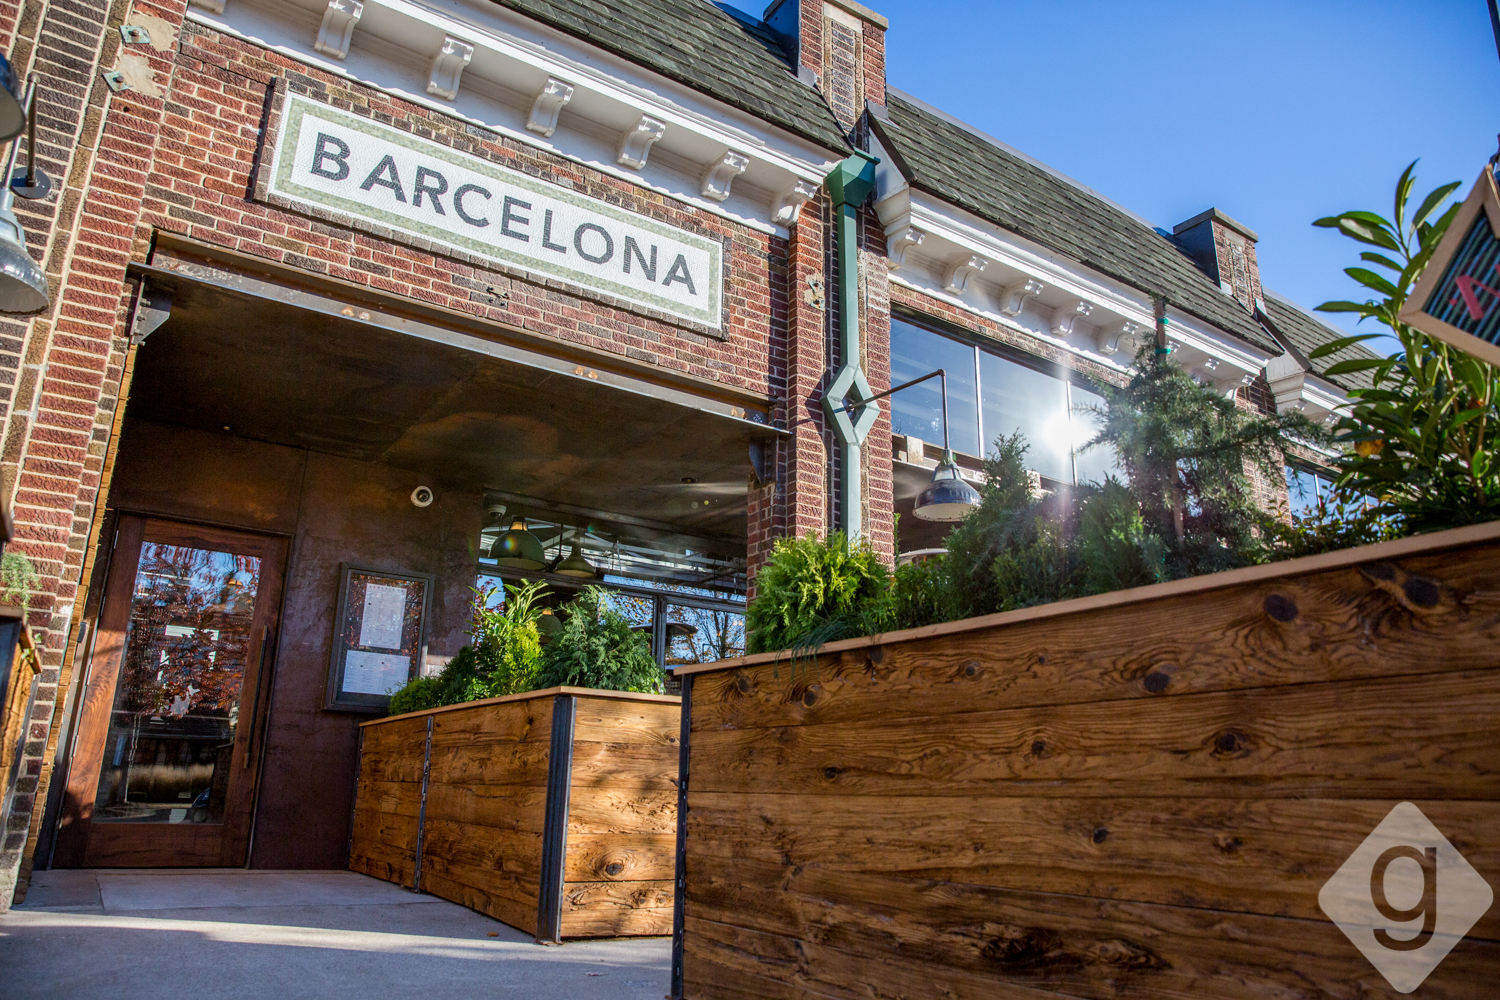 A Look Inside: Barcelona Wine Bar | Nashville Guru